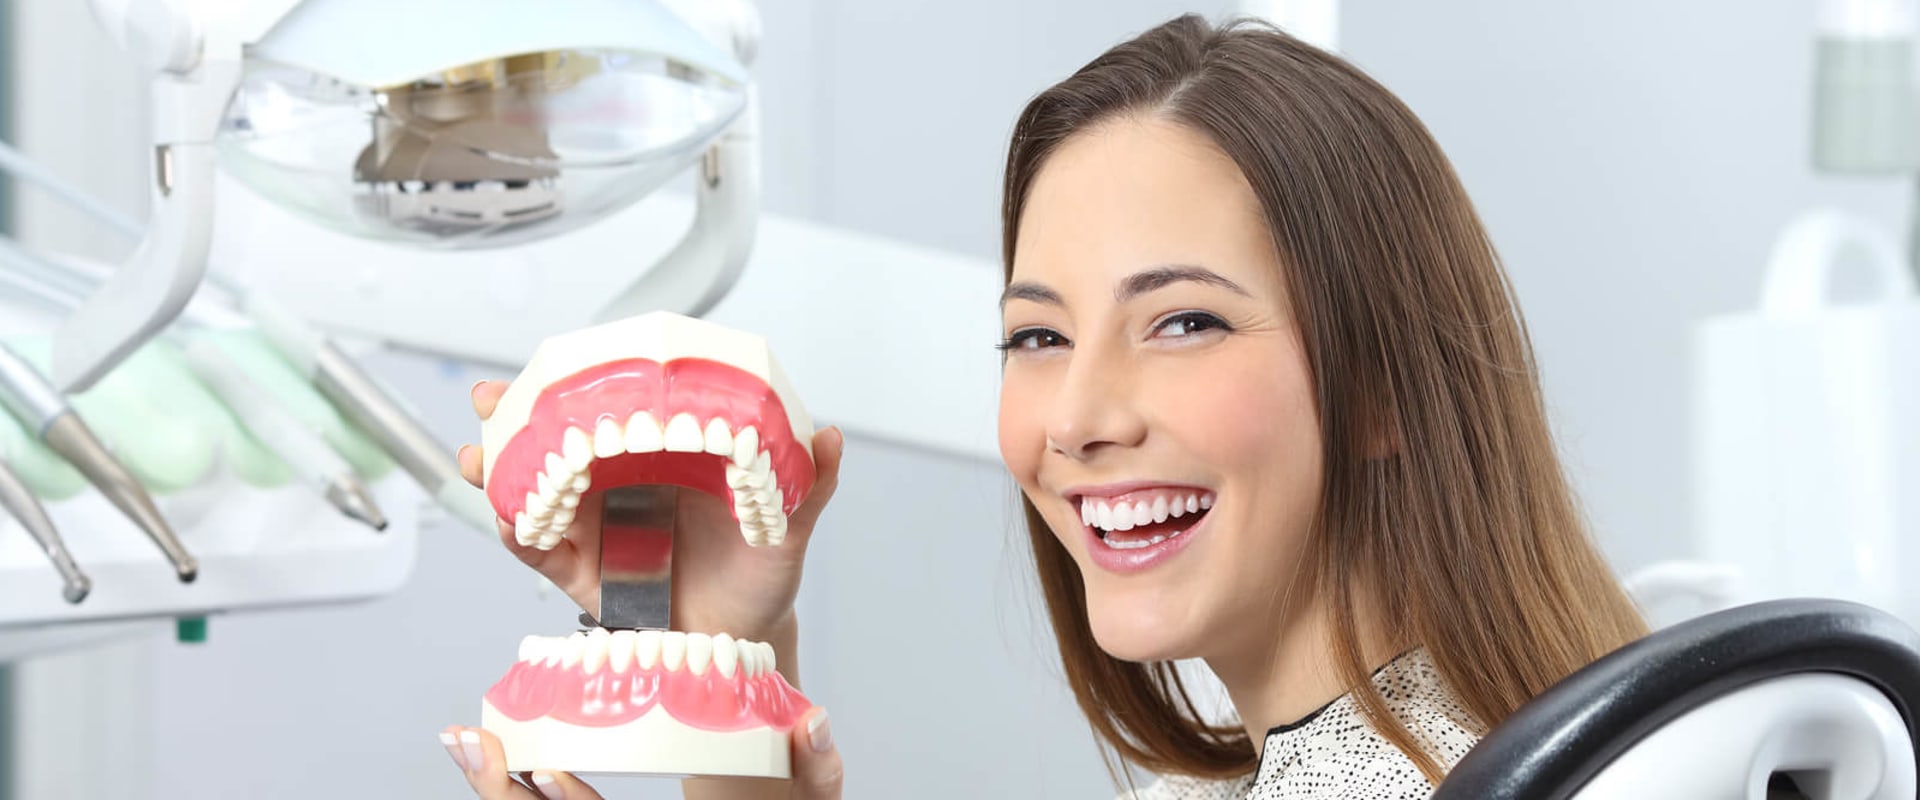 Do Dentures Require Regular Dental Visits?